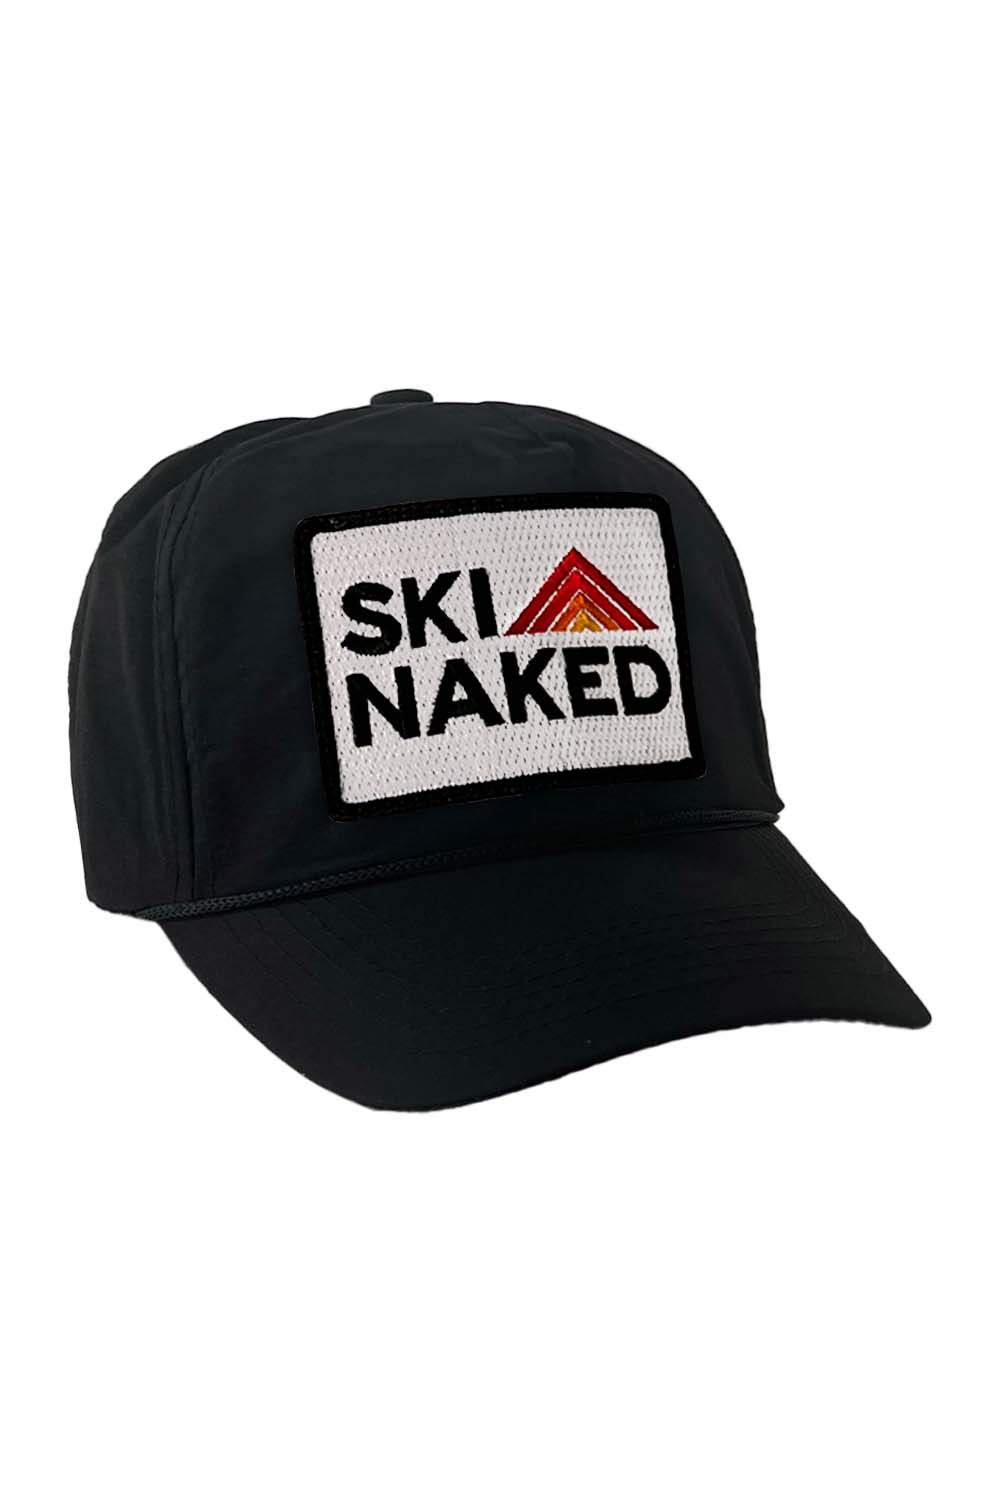 SKI NAKED - VINTAGE NYLON TRUCKER HAT HATS Aviator Nation BLACK 